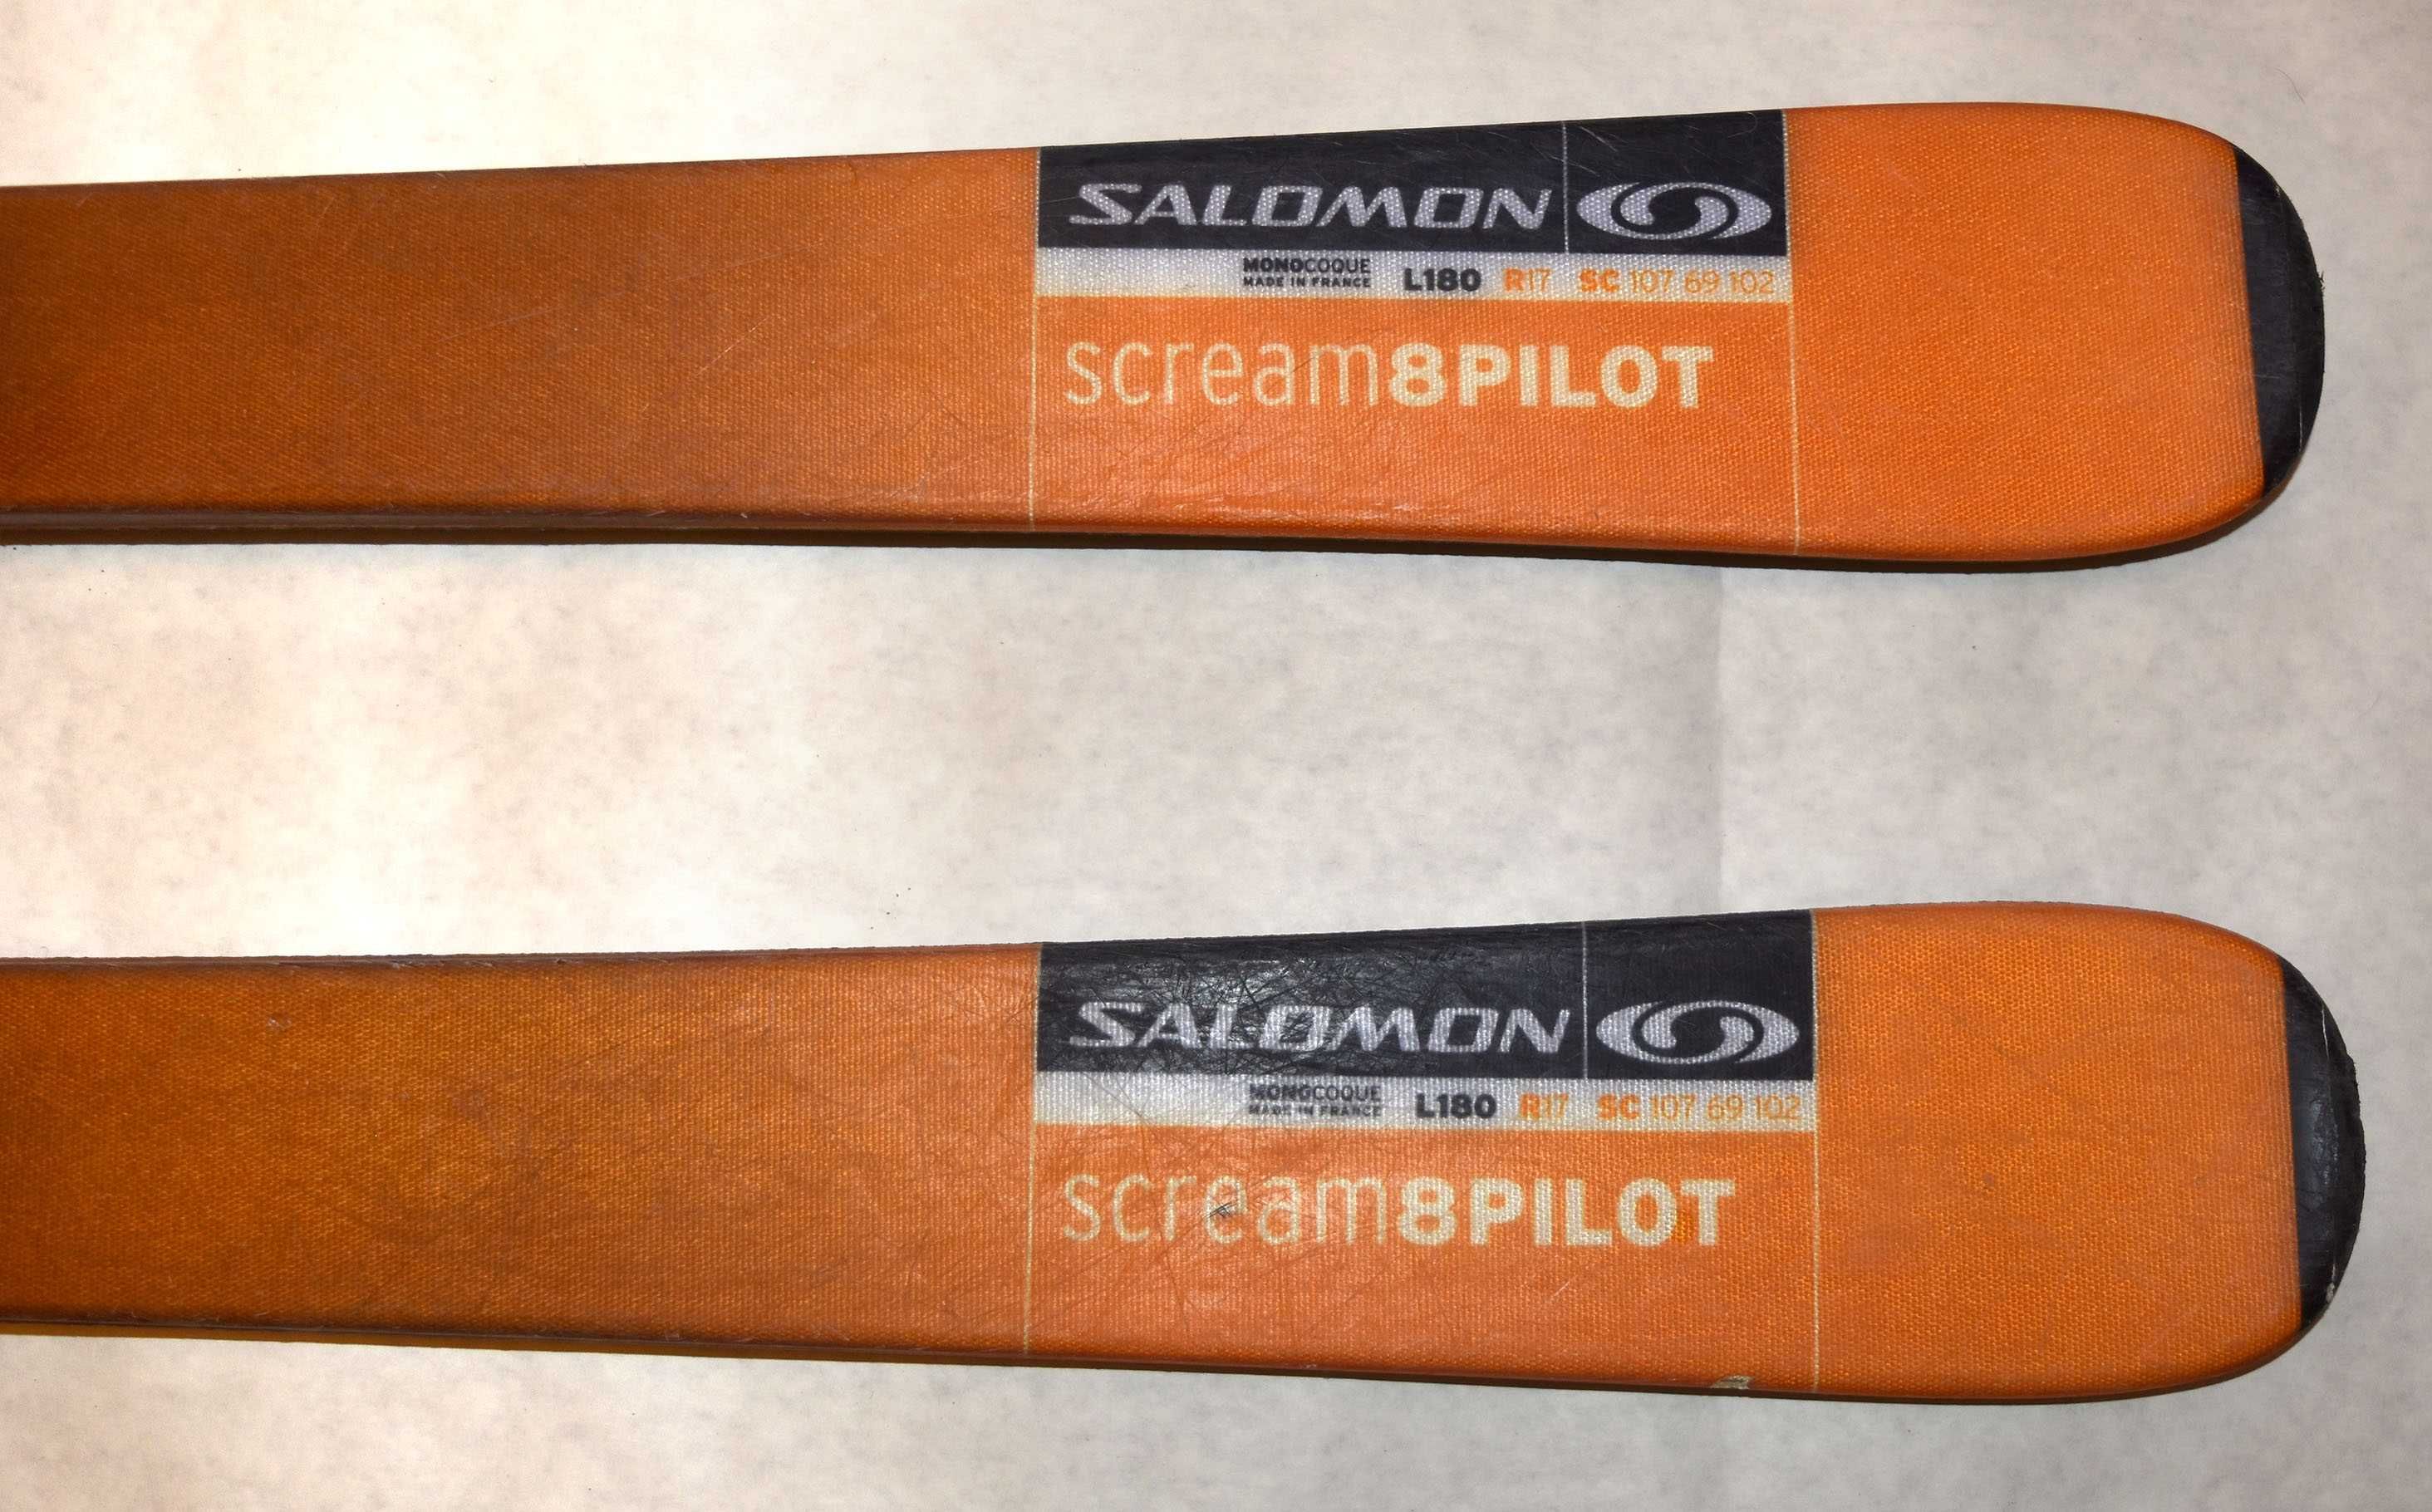 Narty Free Ride Salomon Scream 8 Pilot Monocoque L180